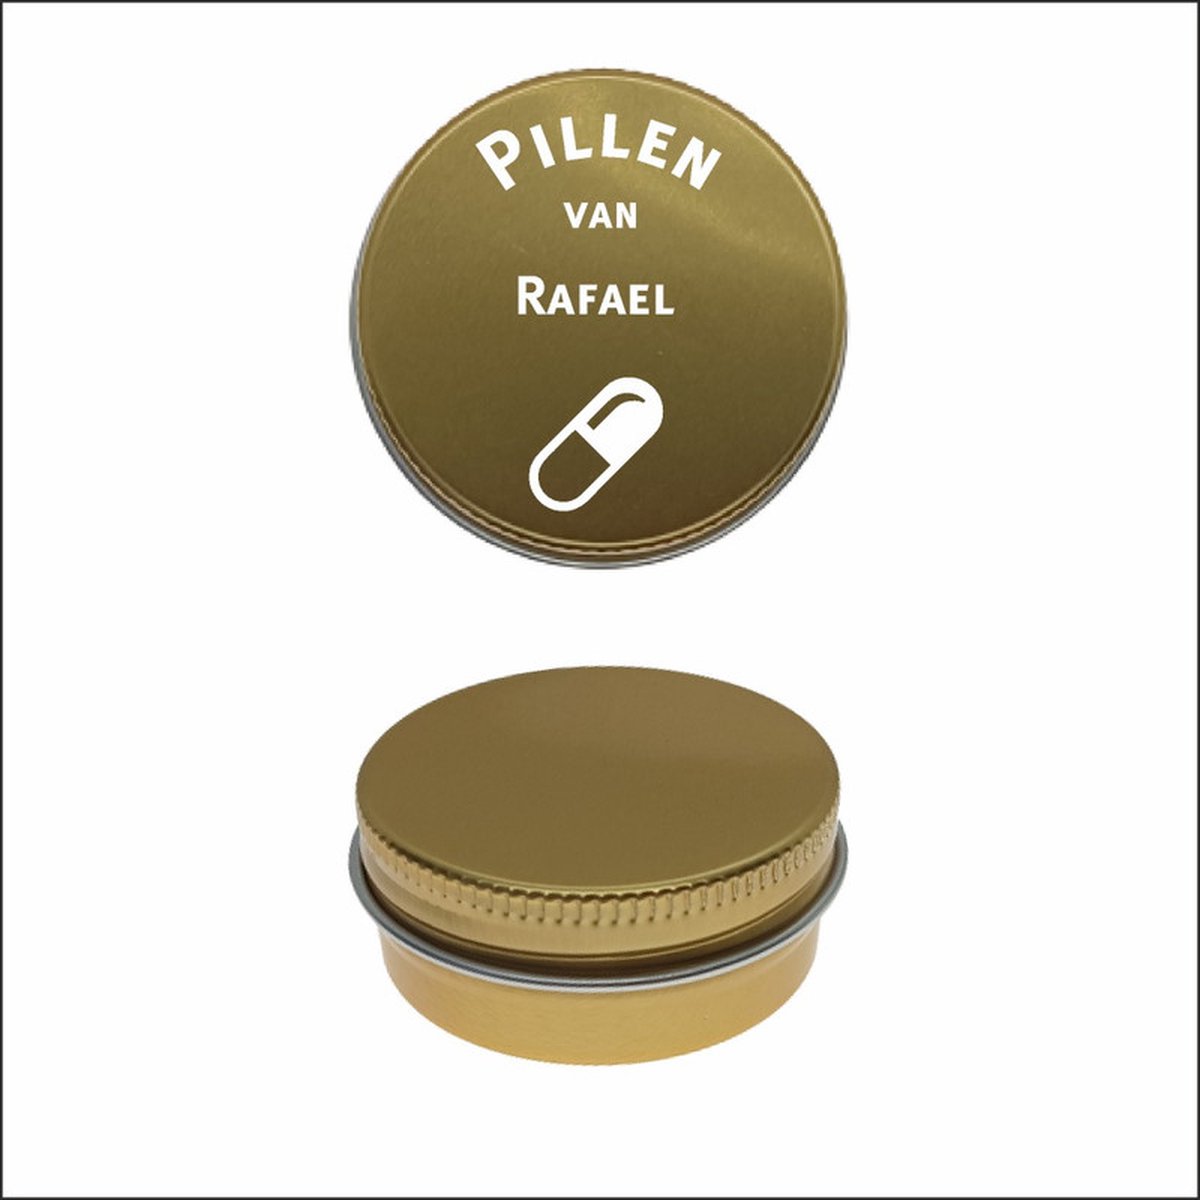 Pillen Blikje Met Naam Gravering - Rafael